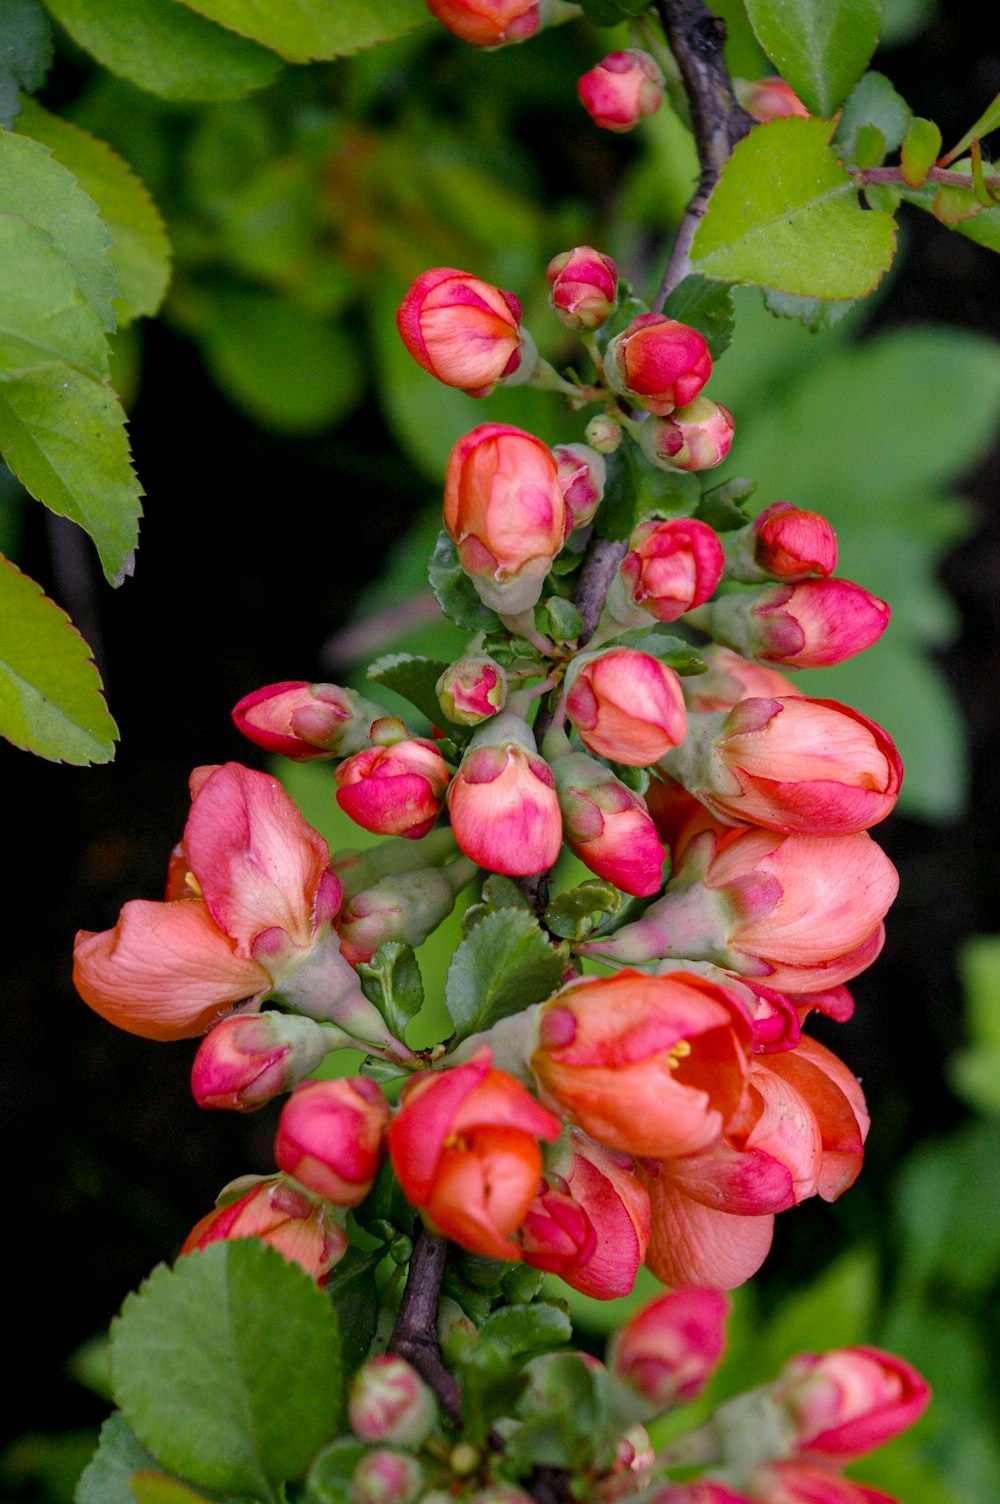 fiore rosa in colpo macro